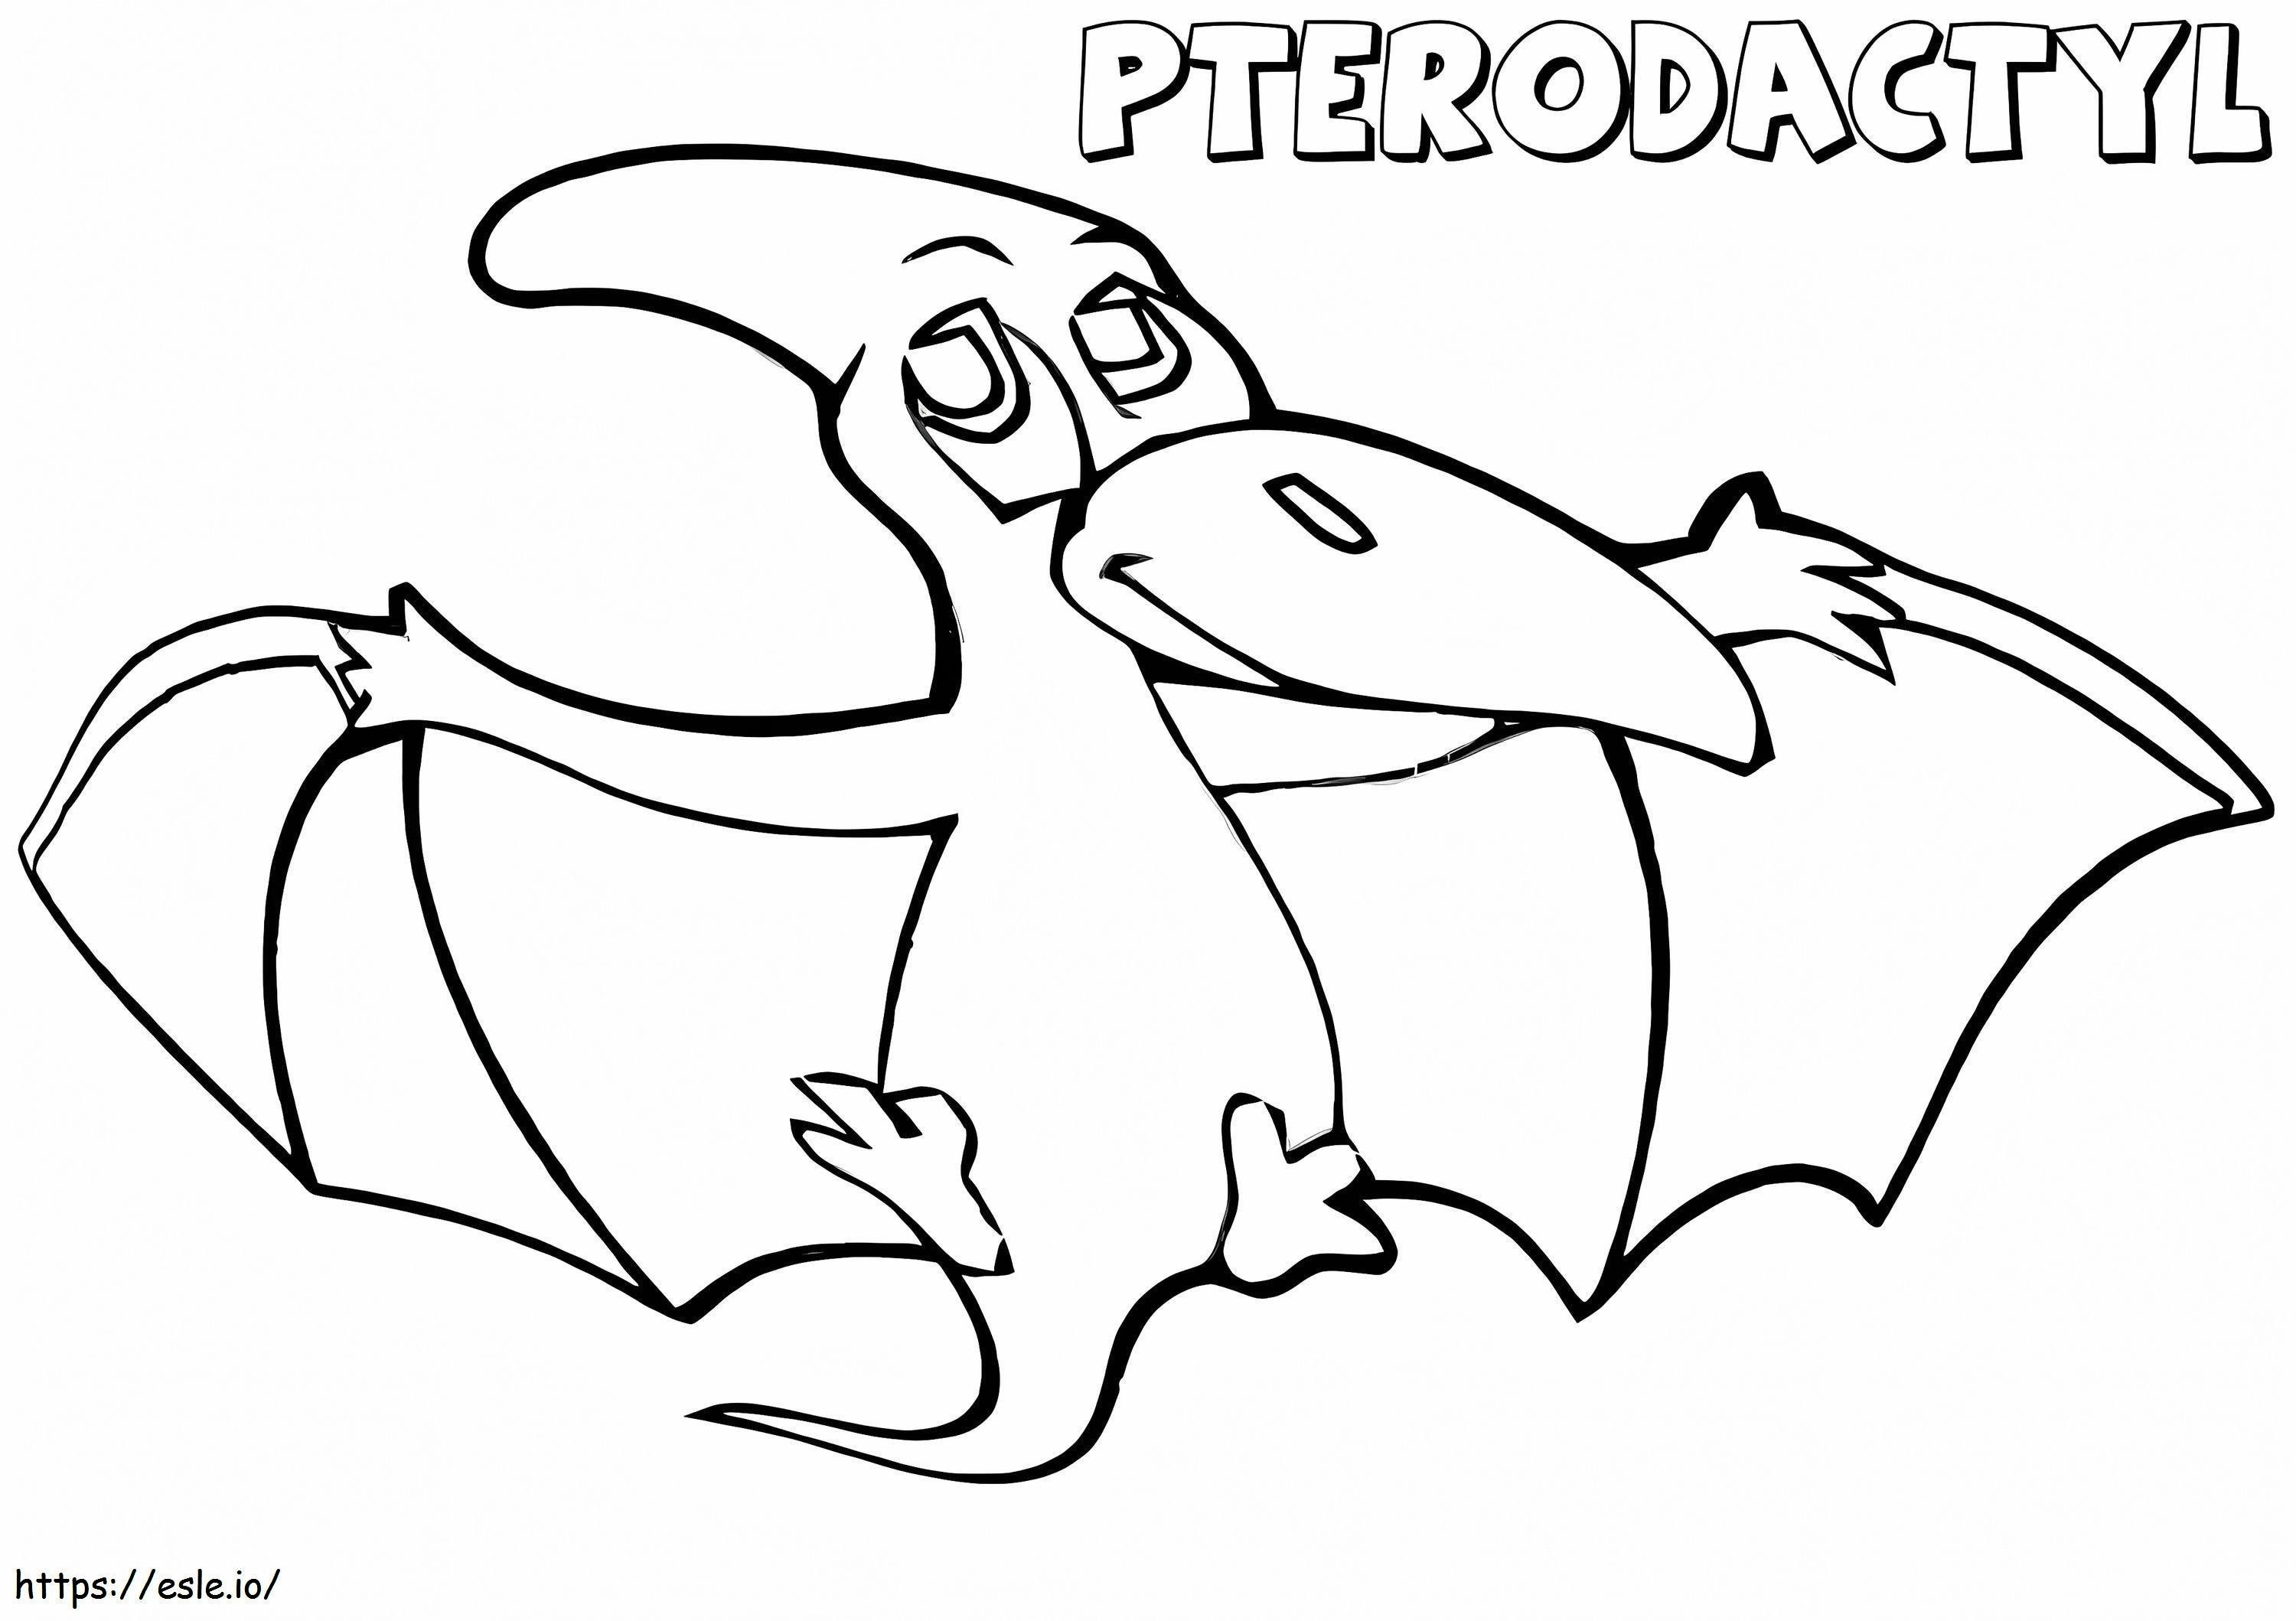 Niedlicher Pterodaktylus ausmalbilder